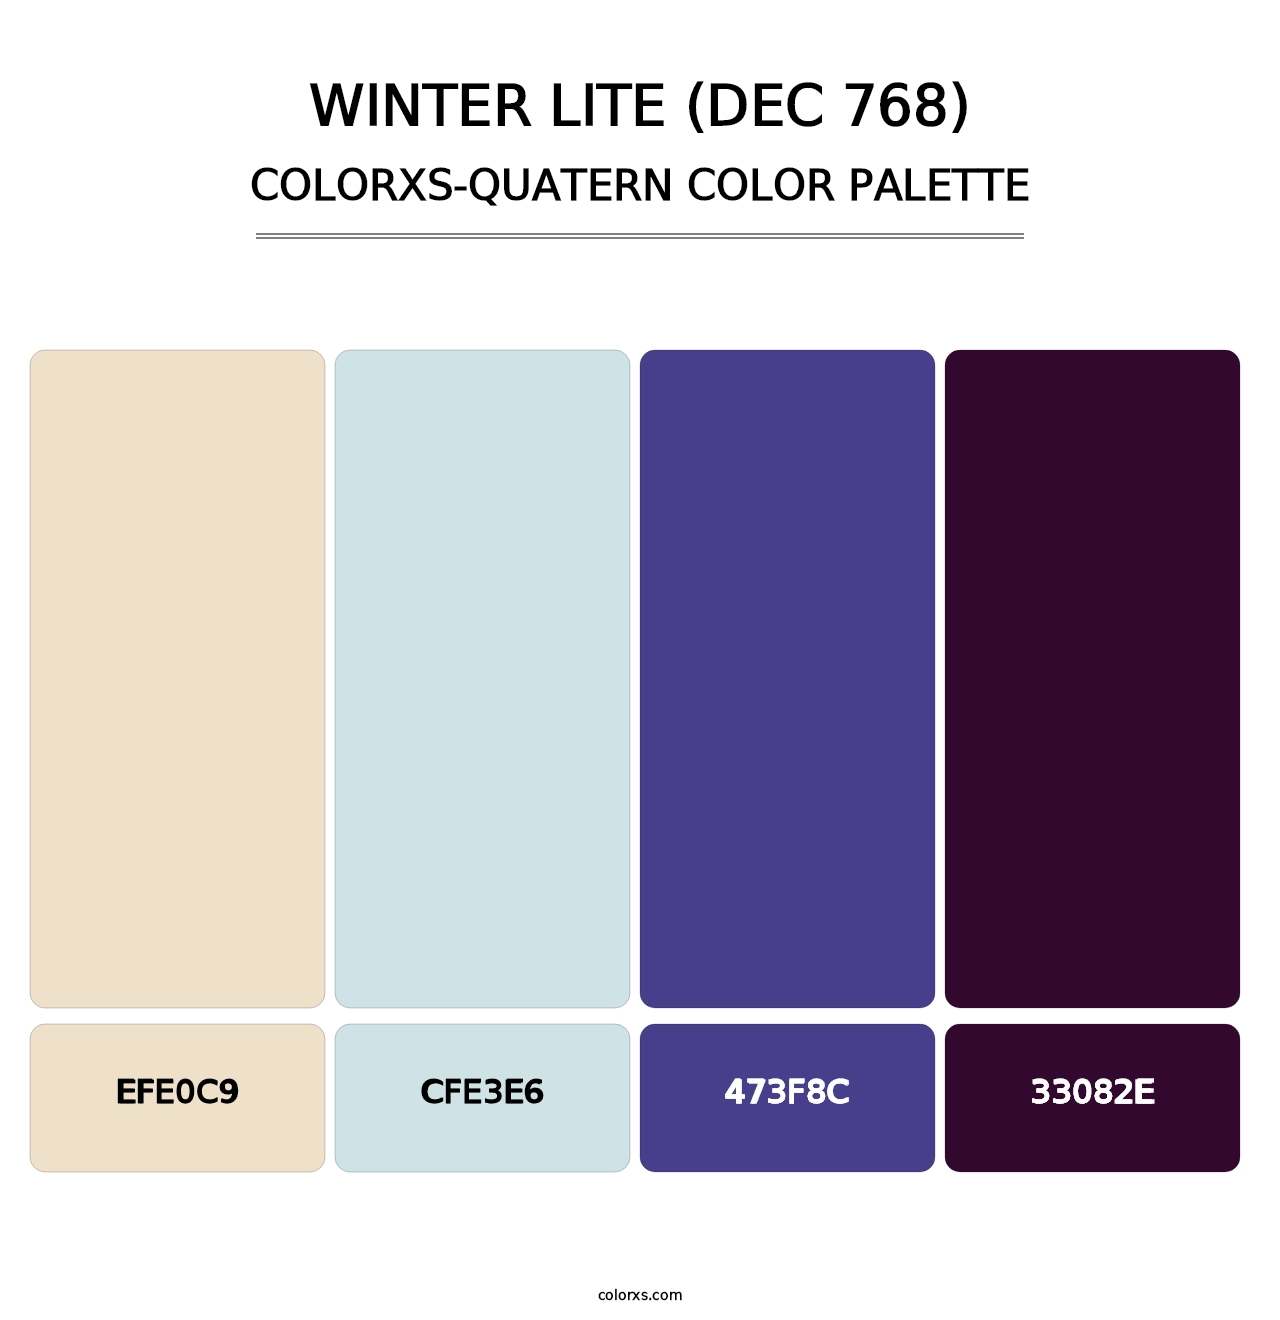 Winter Lite (DEC 768) - Colorxs Quatern Palette